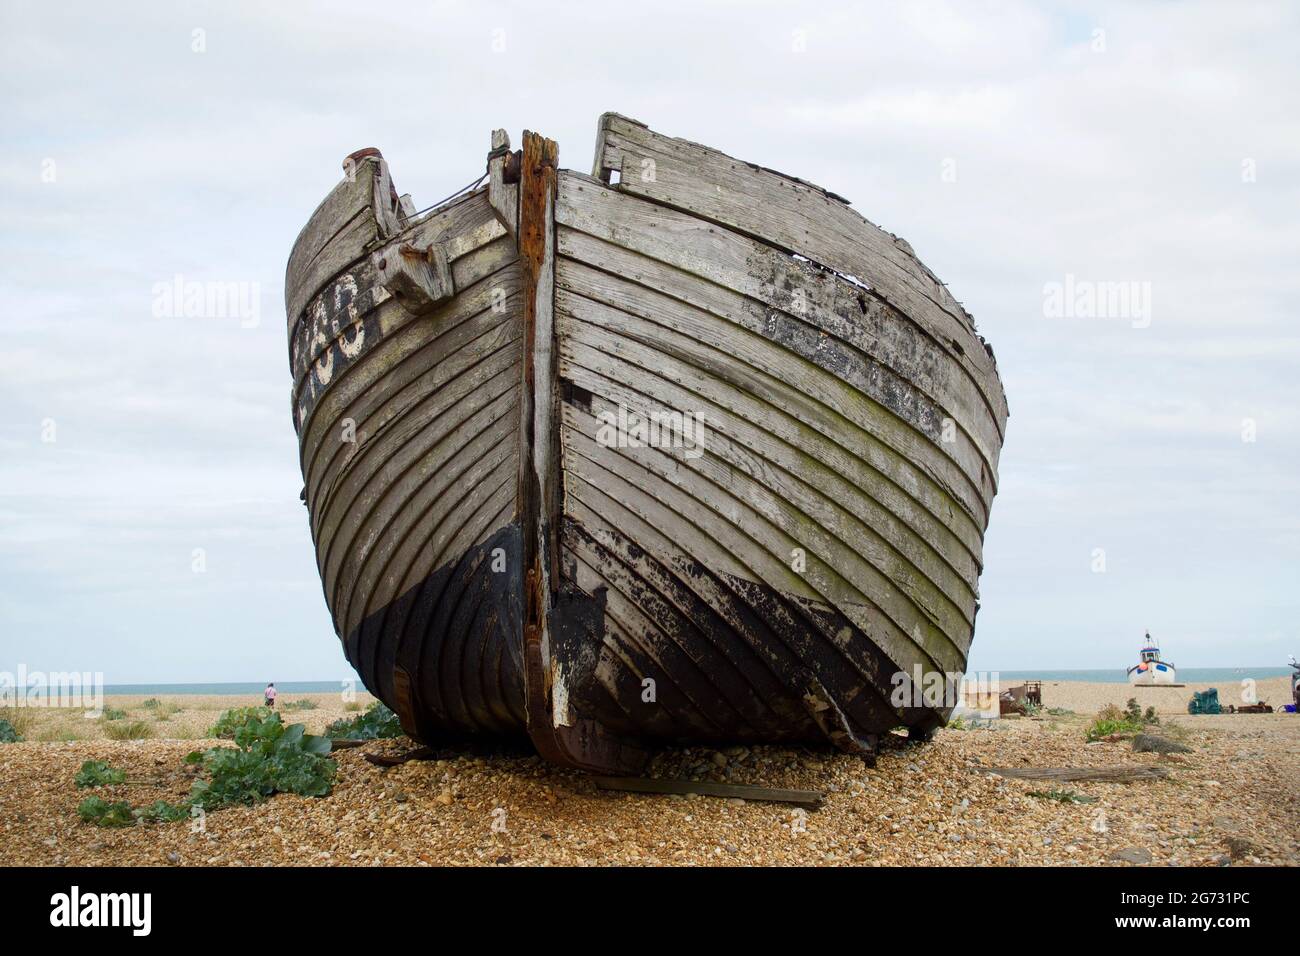 Dungeness, Angleterre, UK 09.2020 bateau abandonné sur une plage de galets dans le désert avec des plantes autour d'un ciel nuageux Banque D'Images